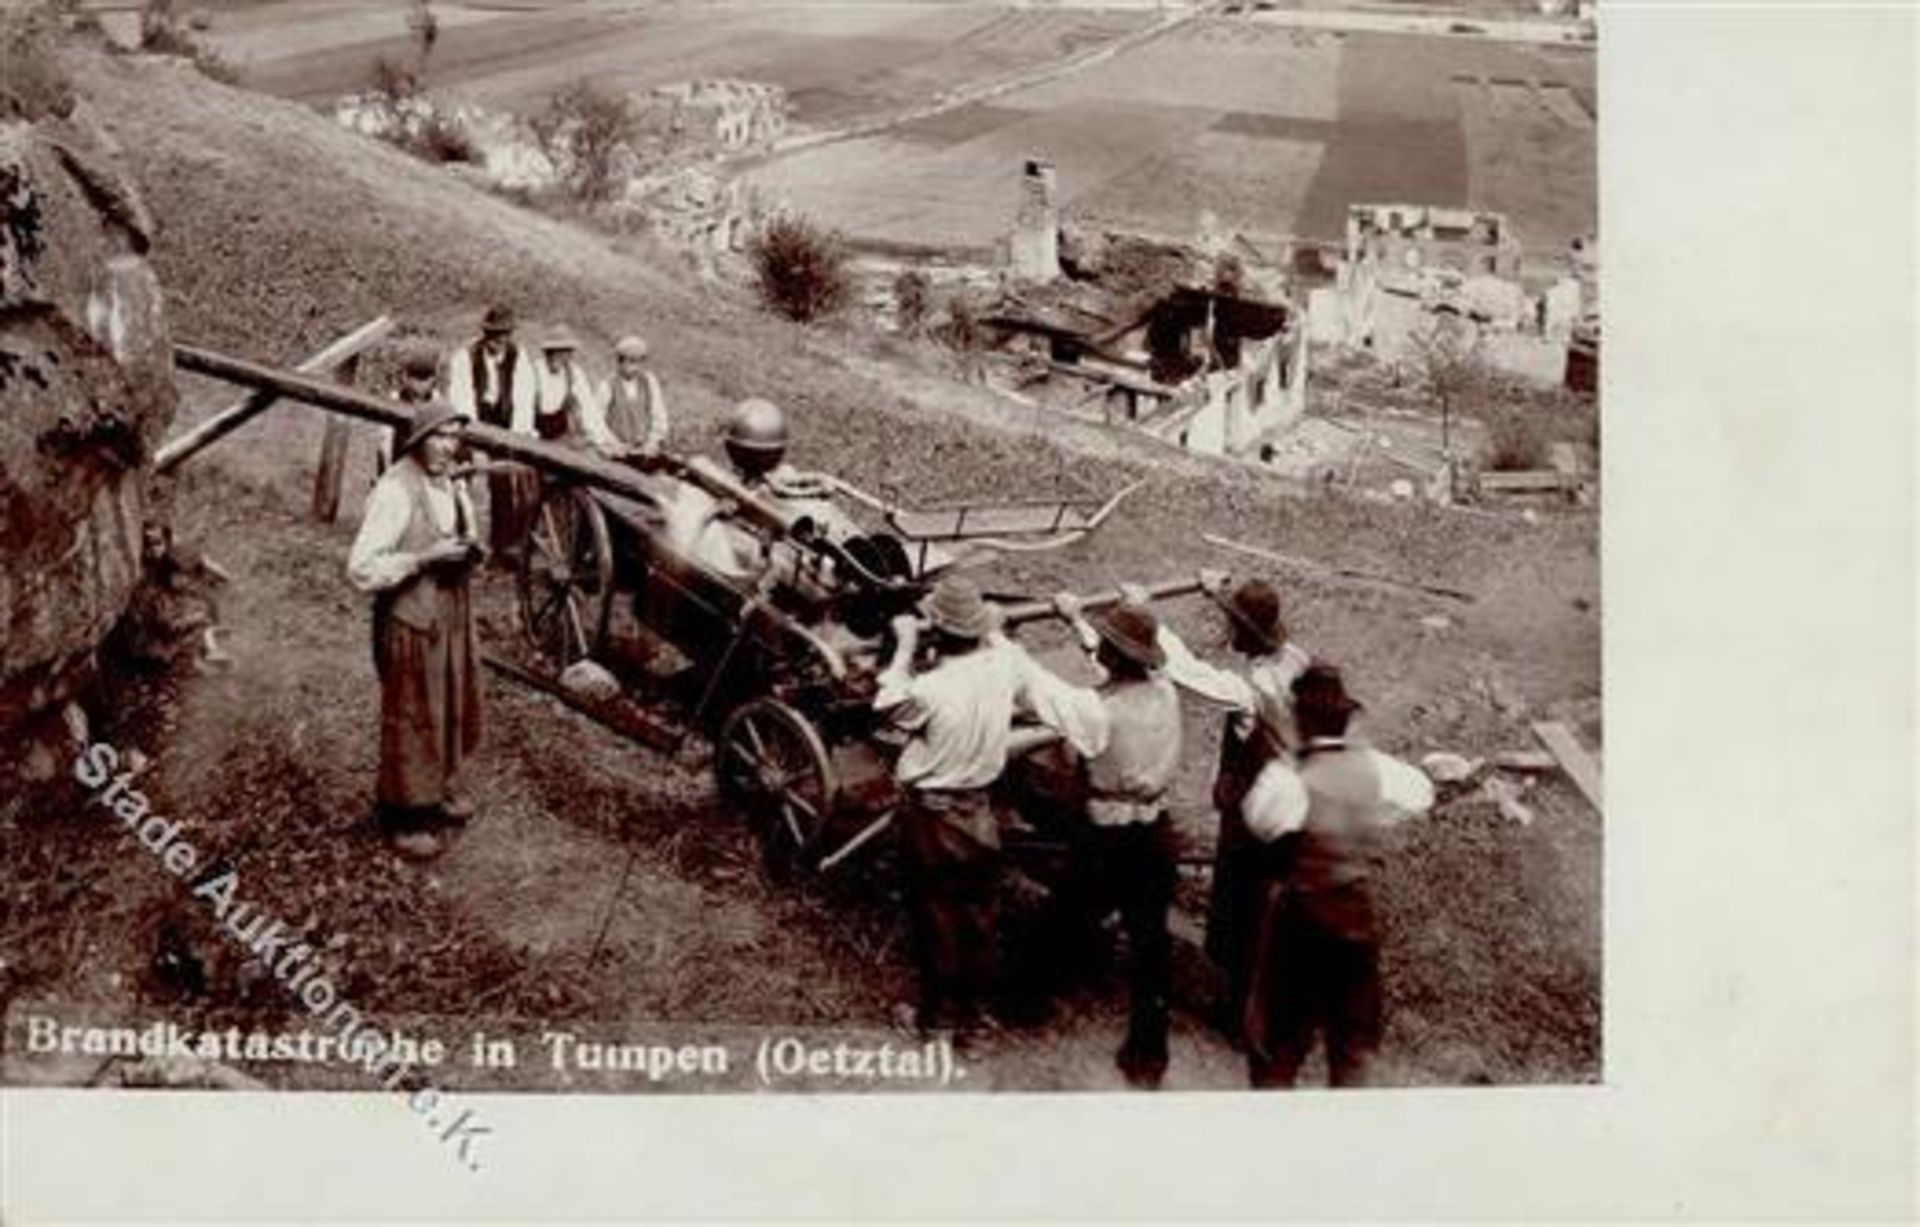 Tumpen (6441) Österreich Brandkatastrophe 1905 I-II (Marke entfernt)Dieses Los wird in einer